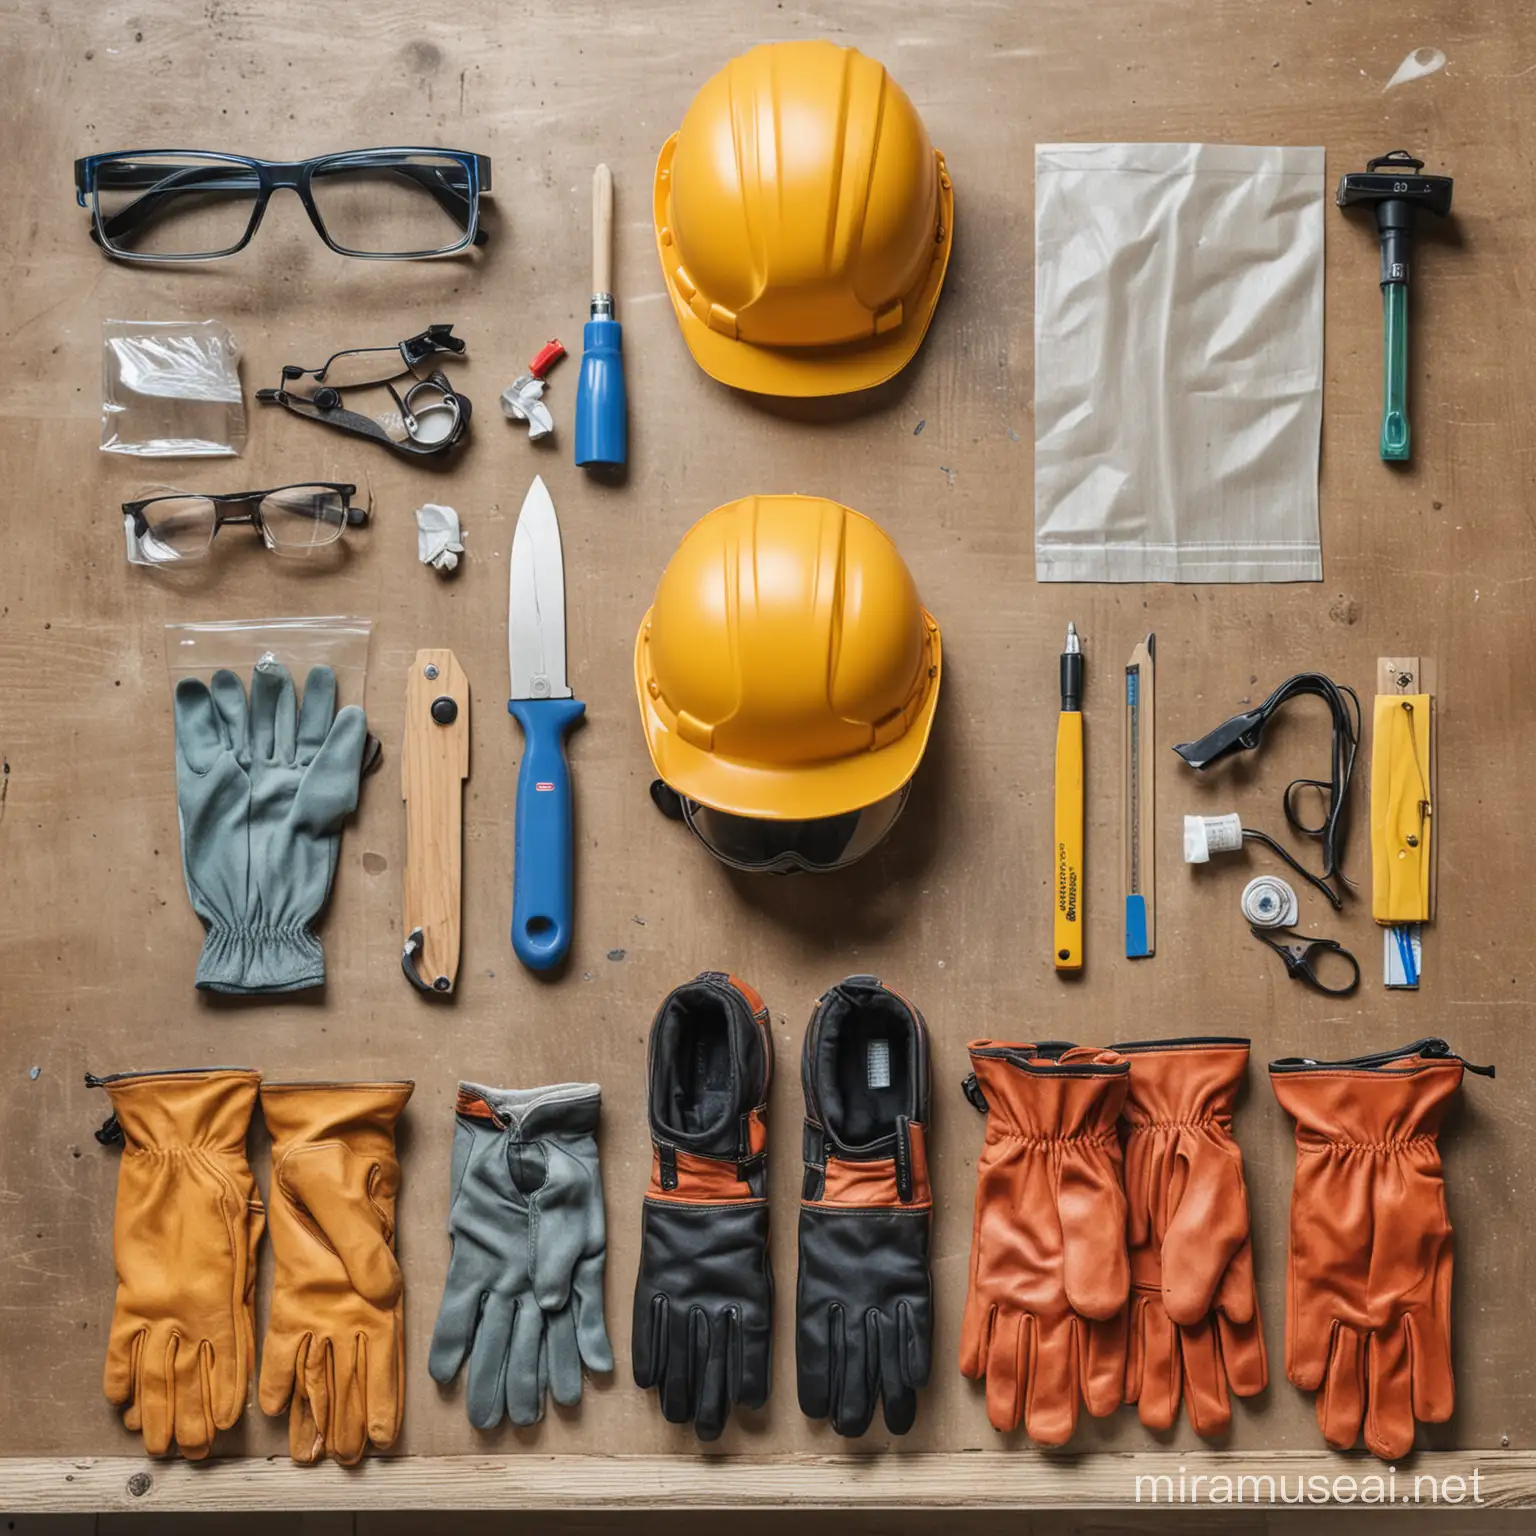 equipamentos de proteção individual, luvas, óculos de proteção e capacete, area 
de trabalho  de carpinteiro  limpa, organizada 